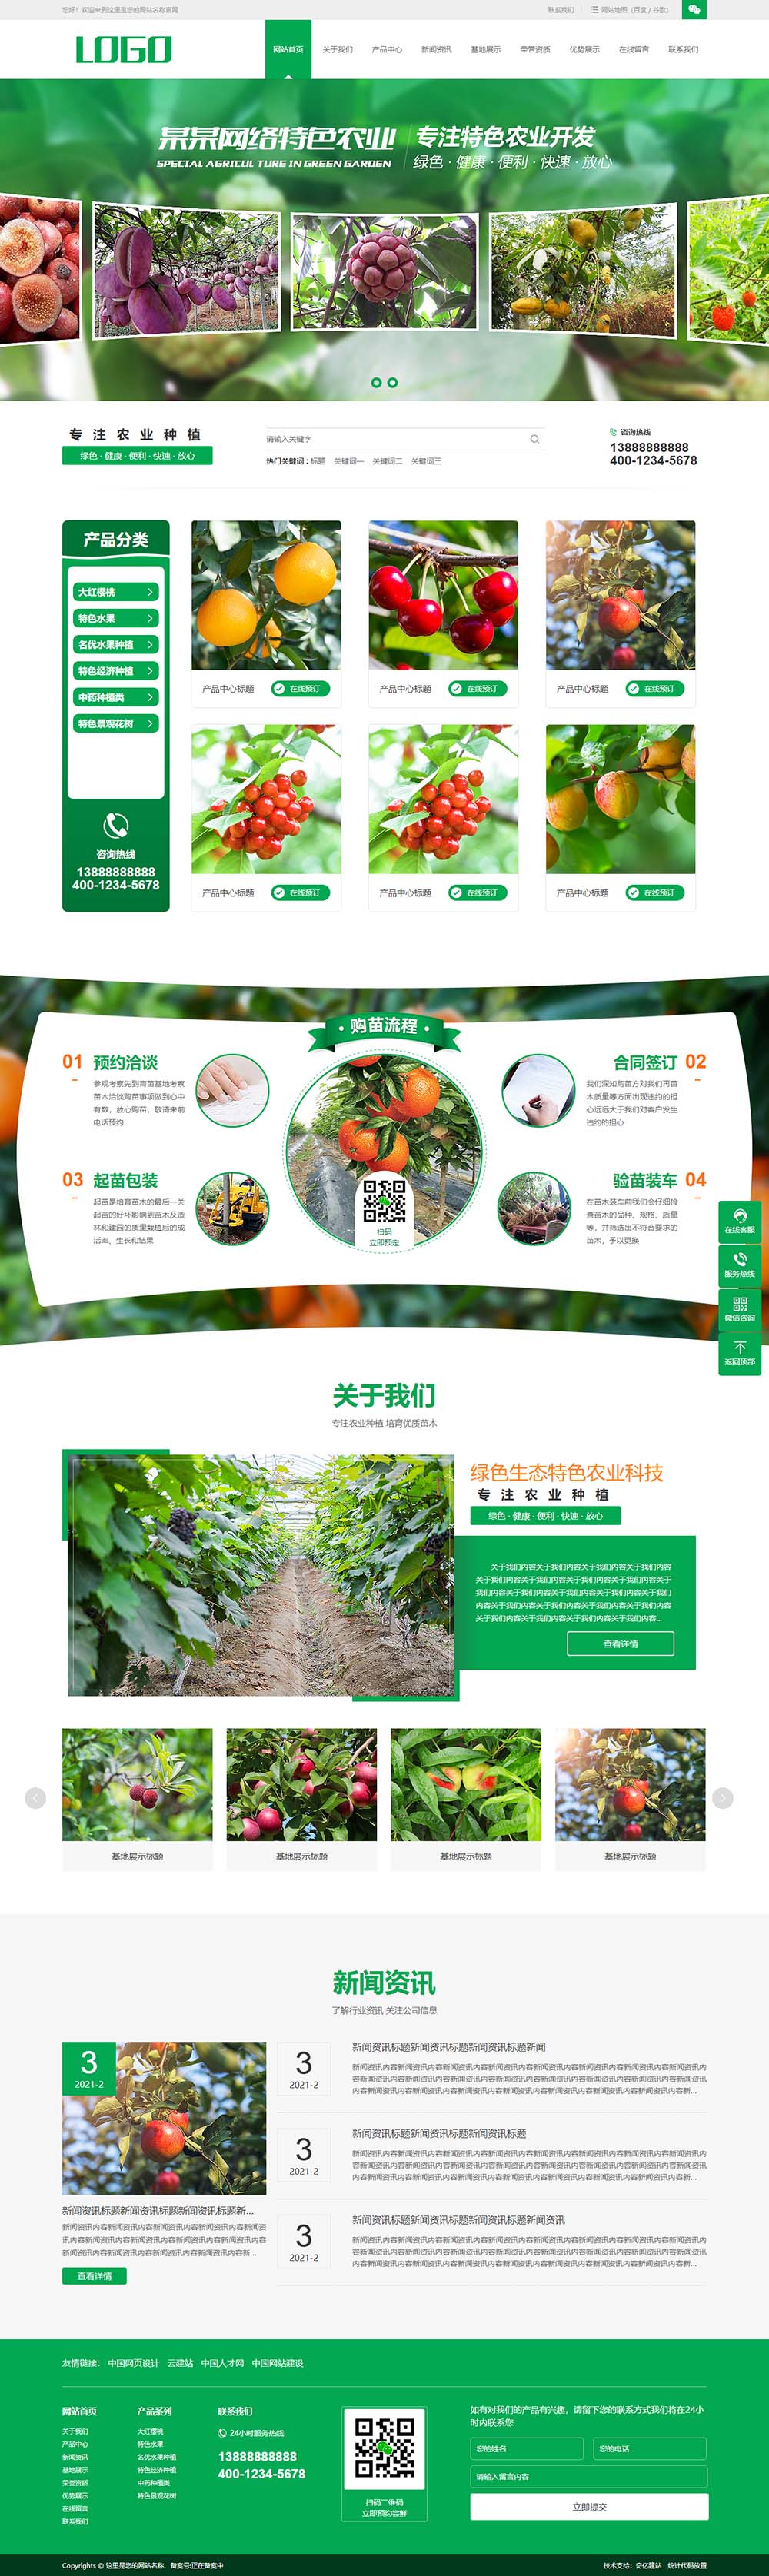 預覽農產品類網站制作模板